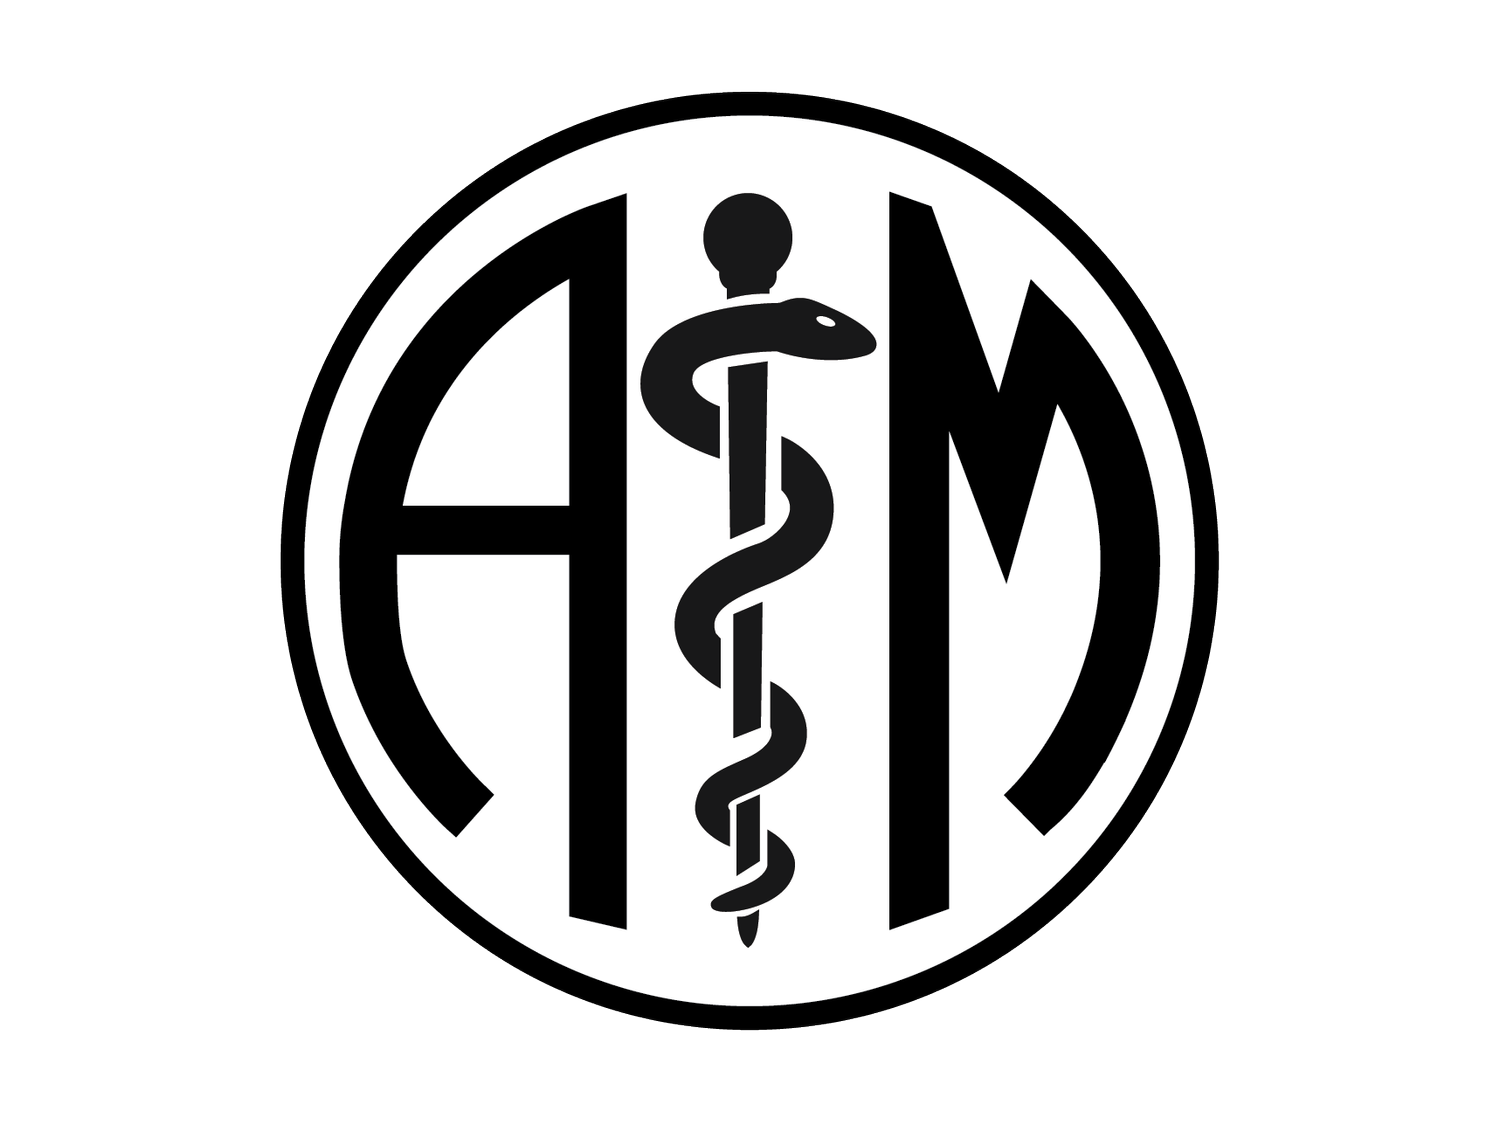 Association for Independent Medicine